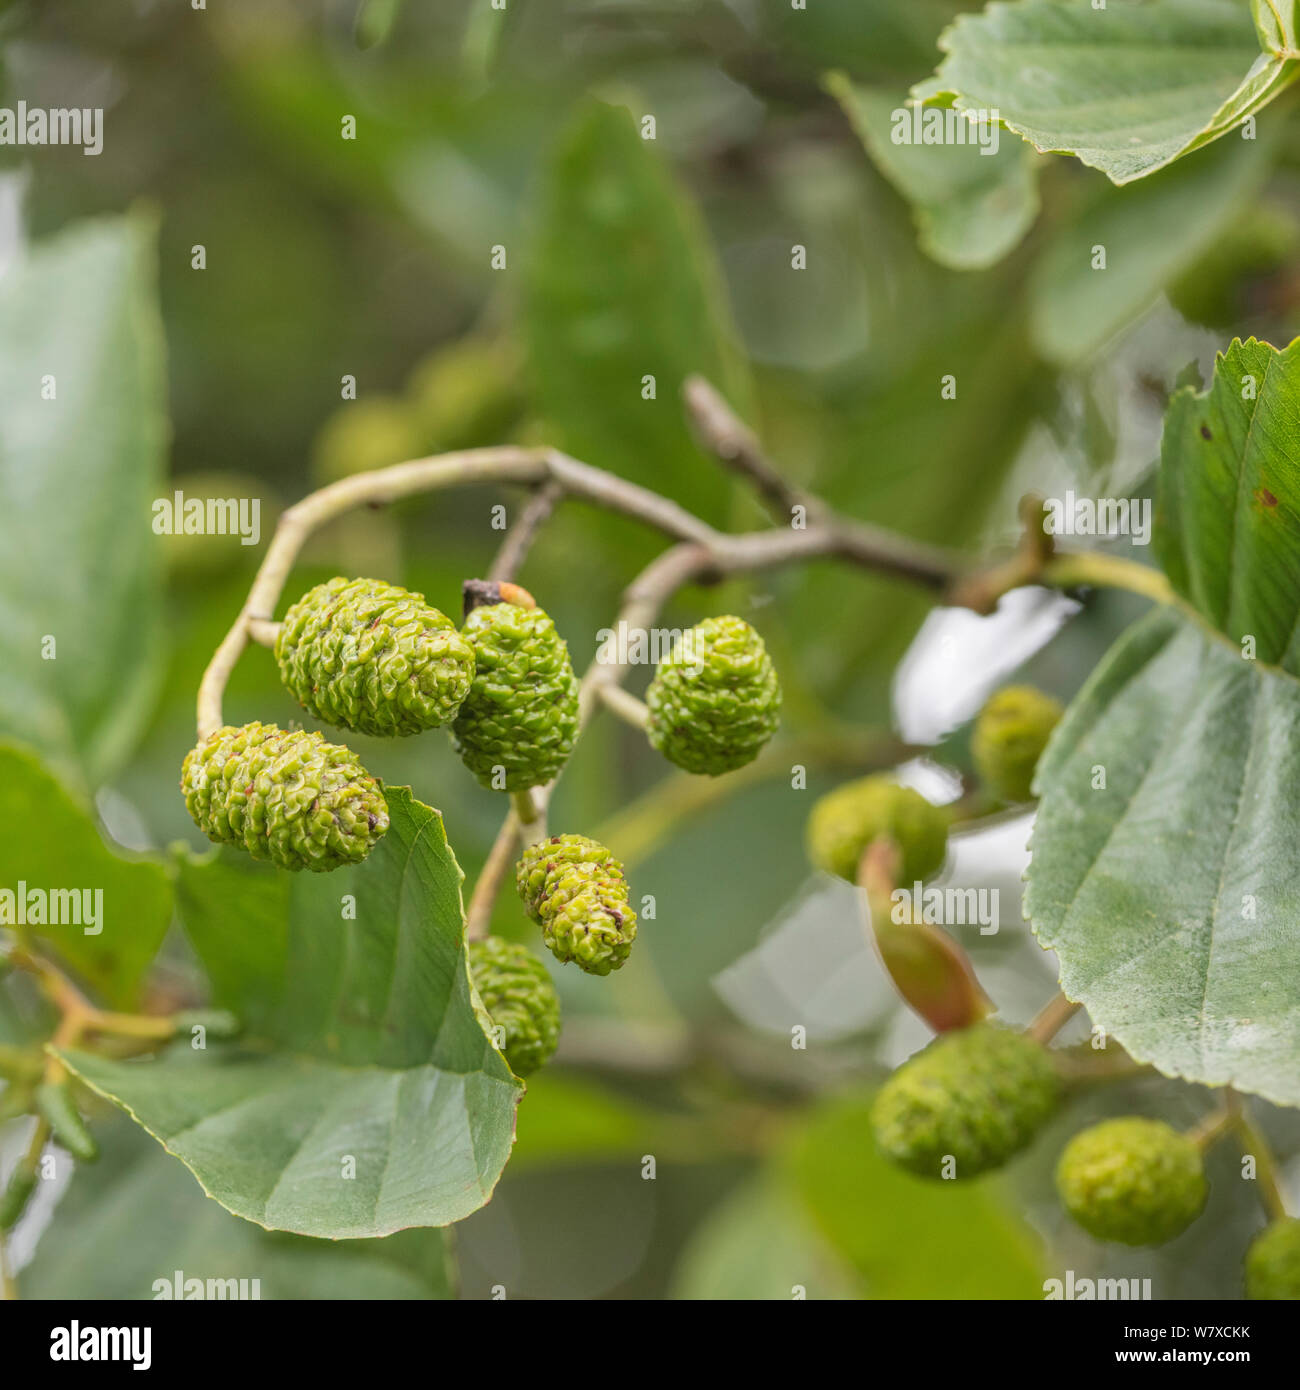 Grüne weiblichen catkin Kegel Früchte und Blätter der Gemeinsamen Erle/Alnus glutinosa. Einmal als Heilpflanze in pflanzliche Heilmittel verwendet. Stockfoto